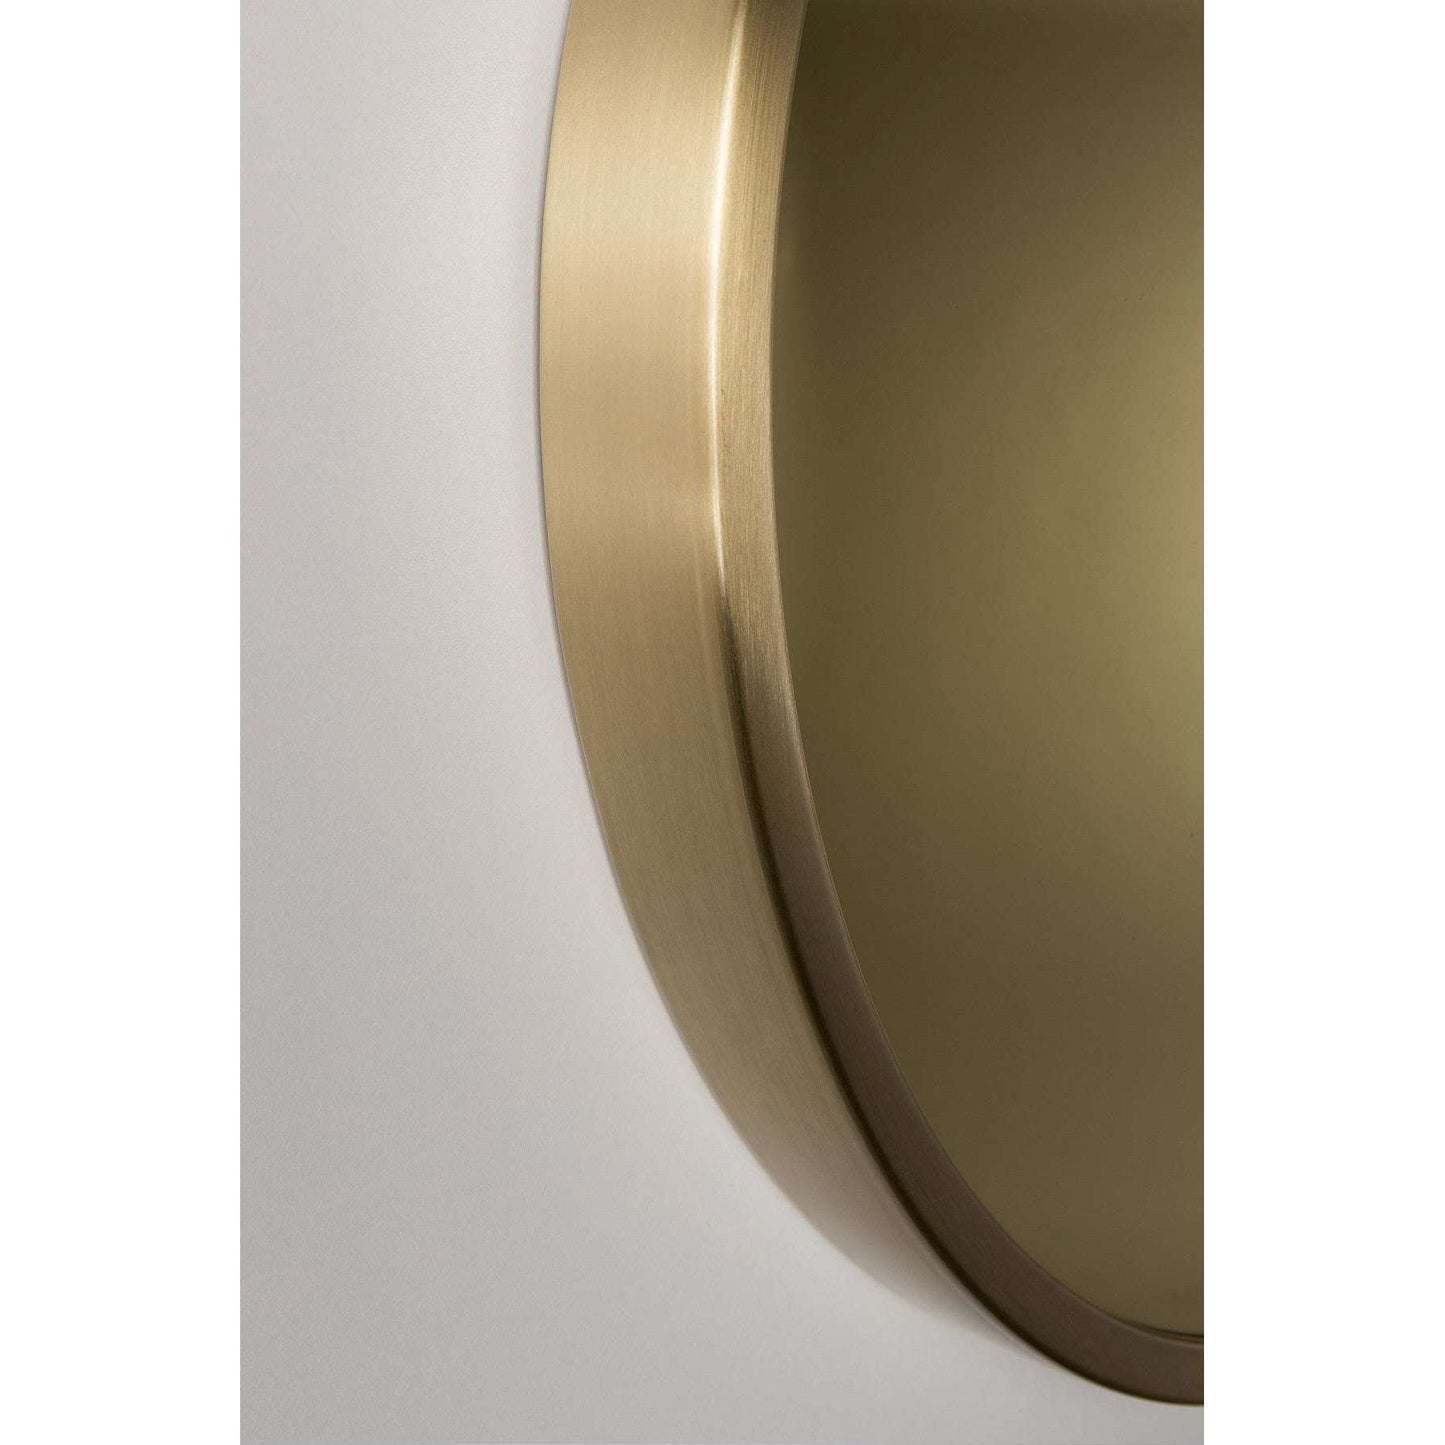 Zuiver spiegel bandit goud Ø60 x 5 cm